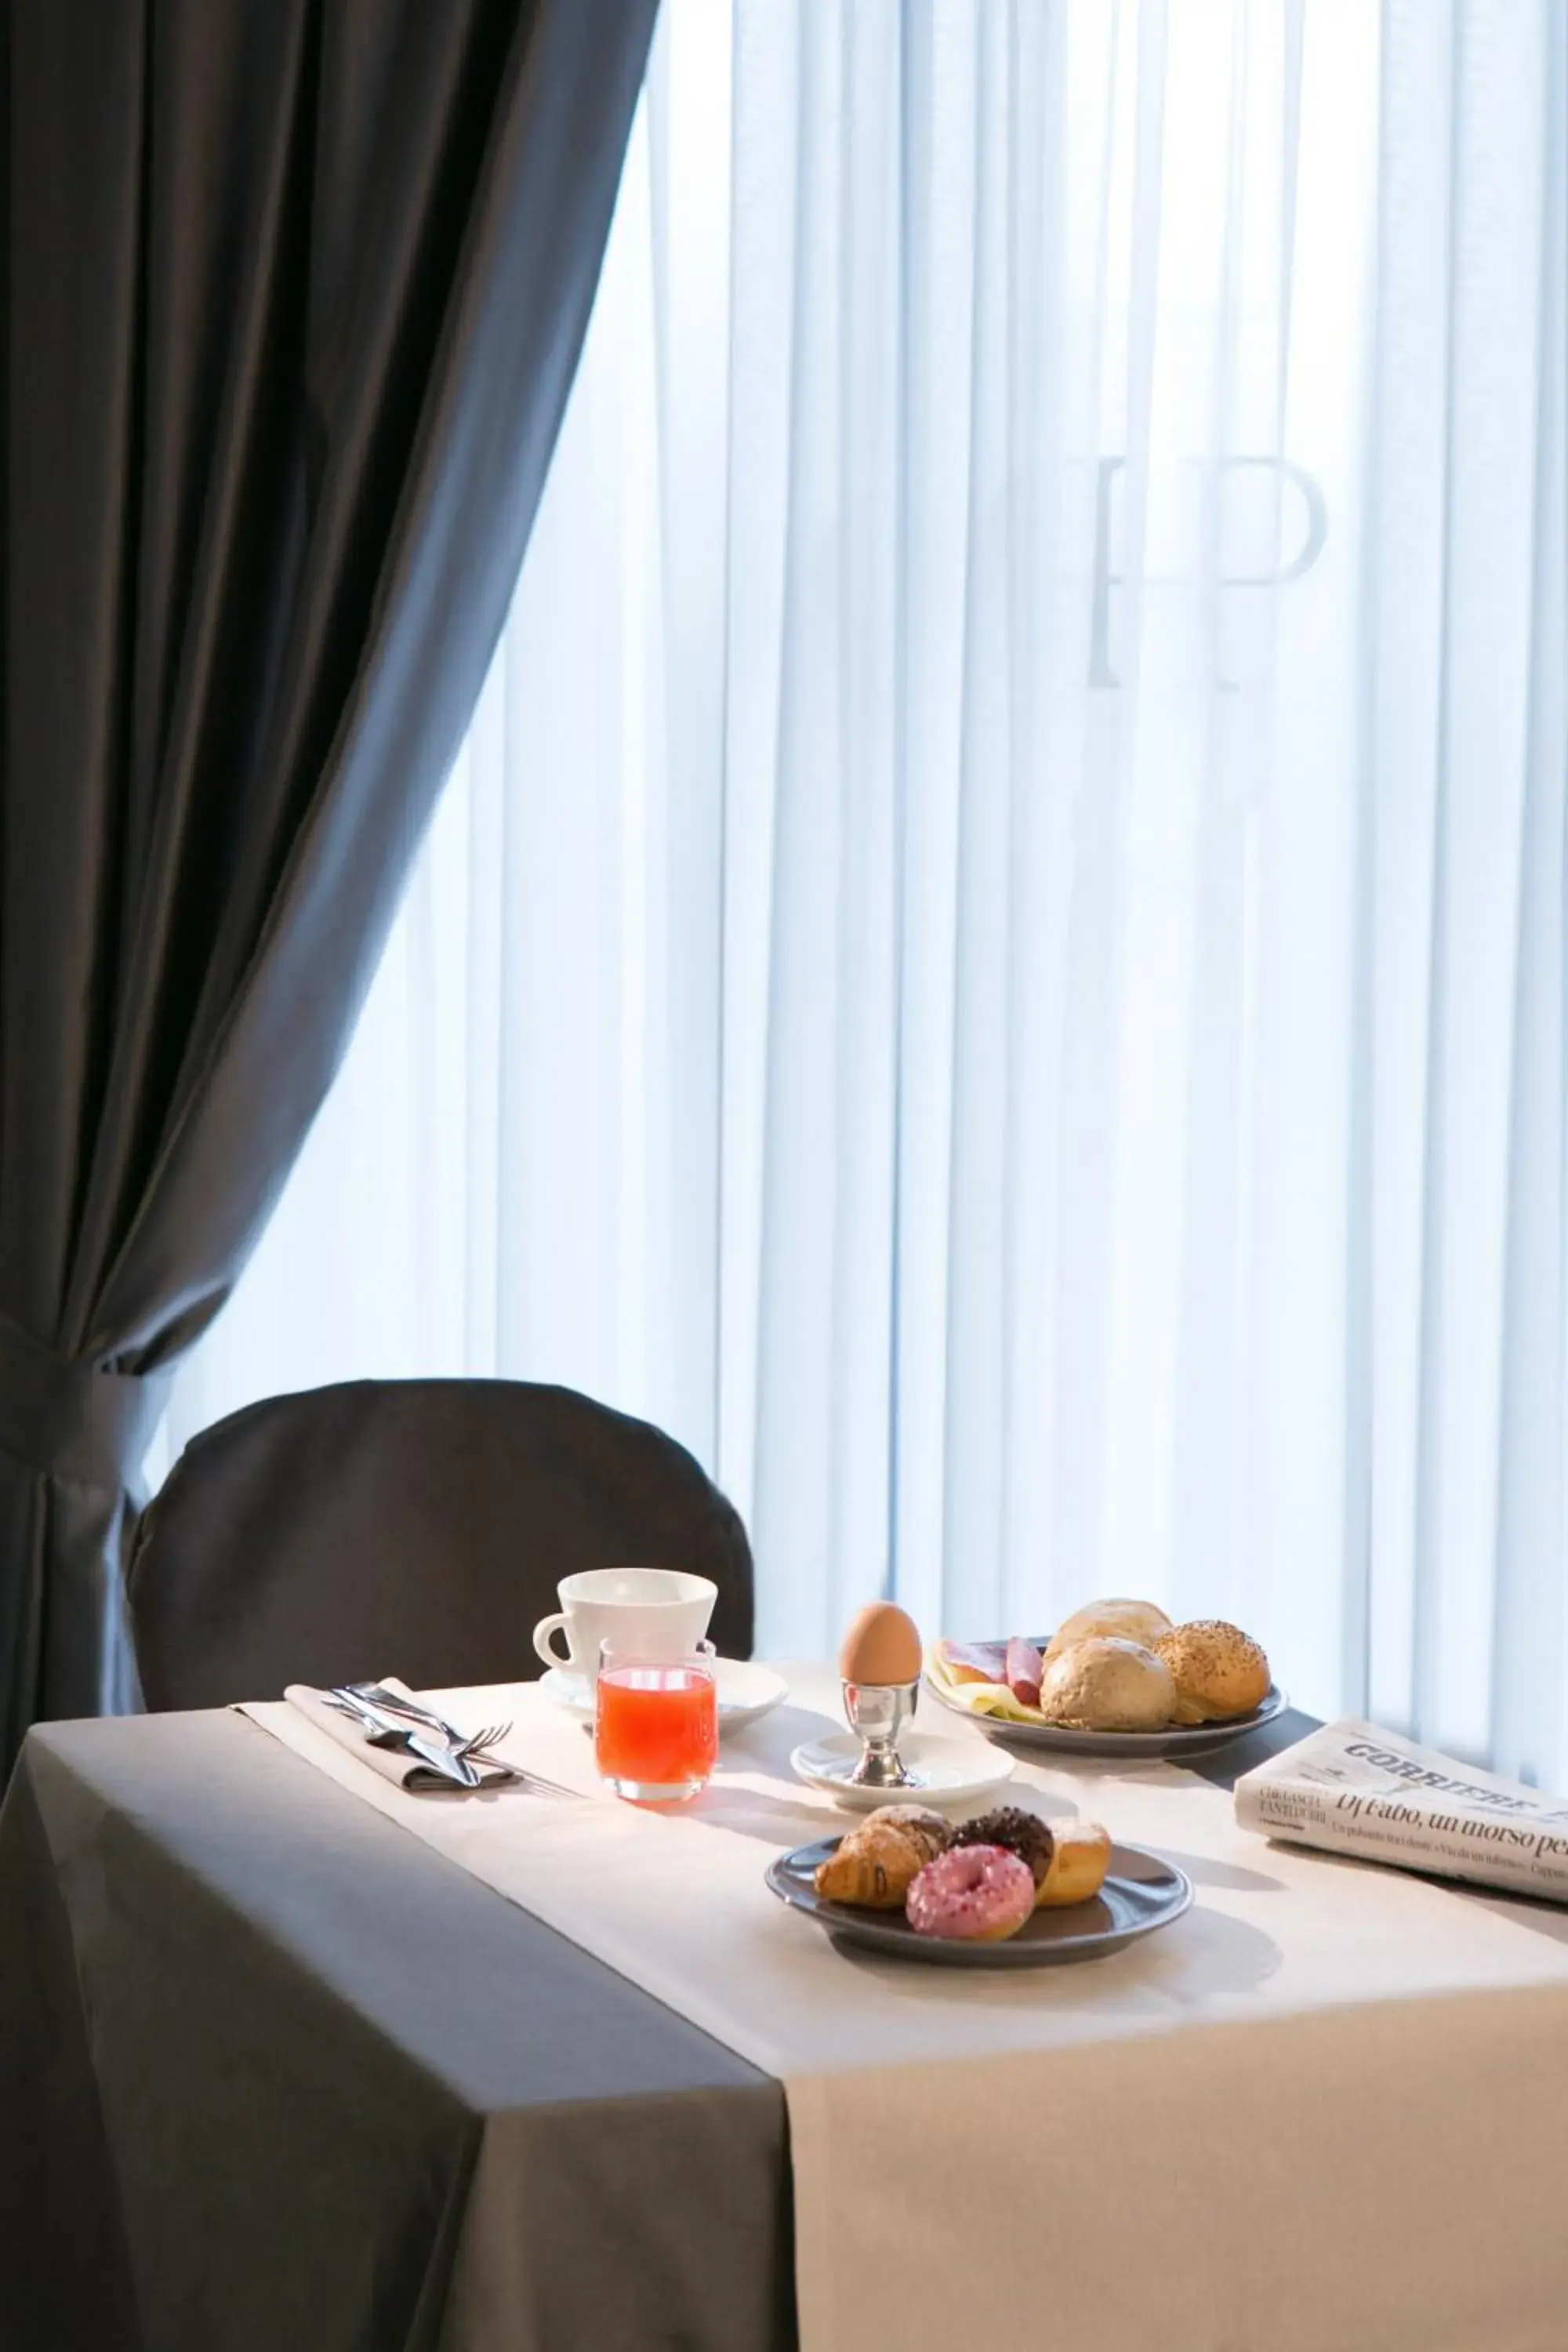 Buffet breakfast in Hotel Principe